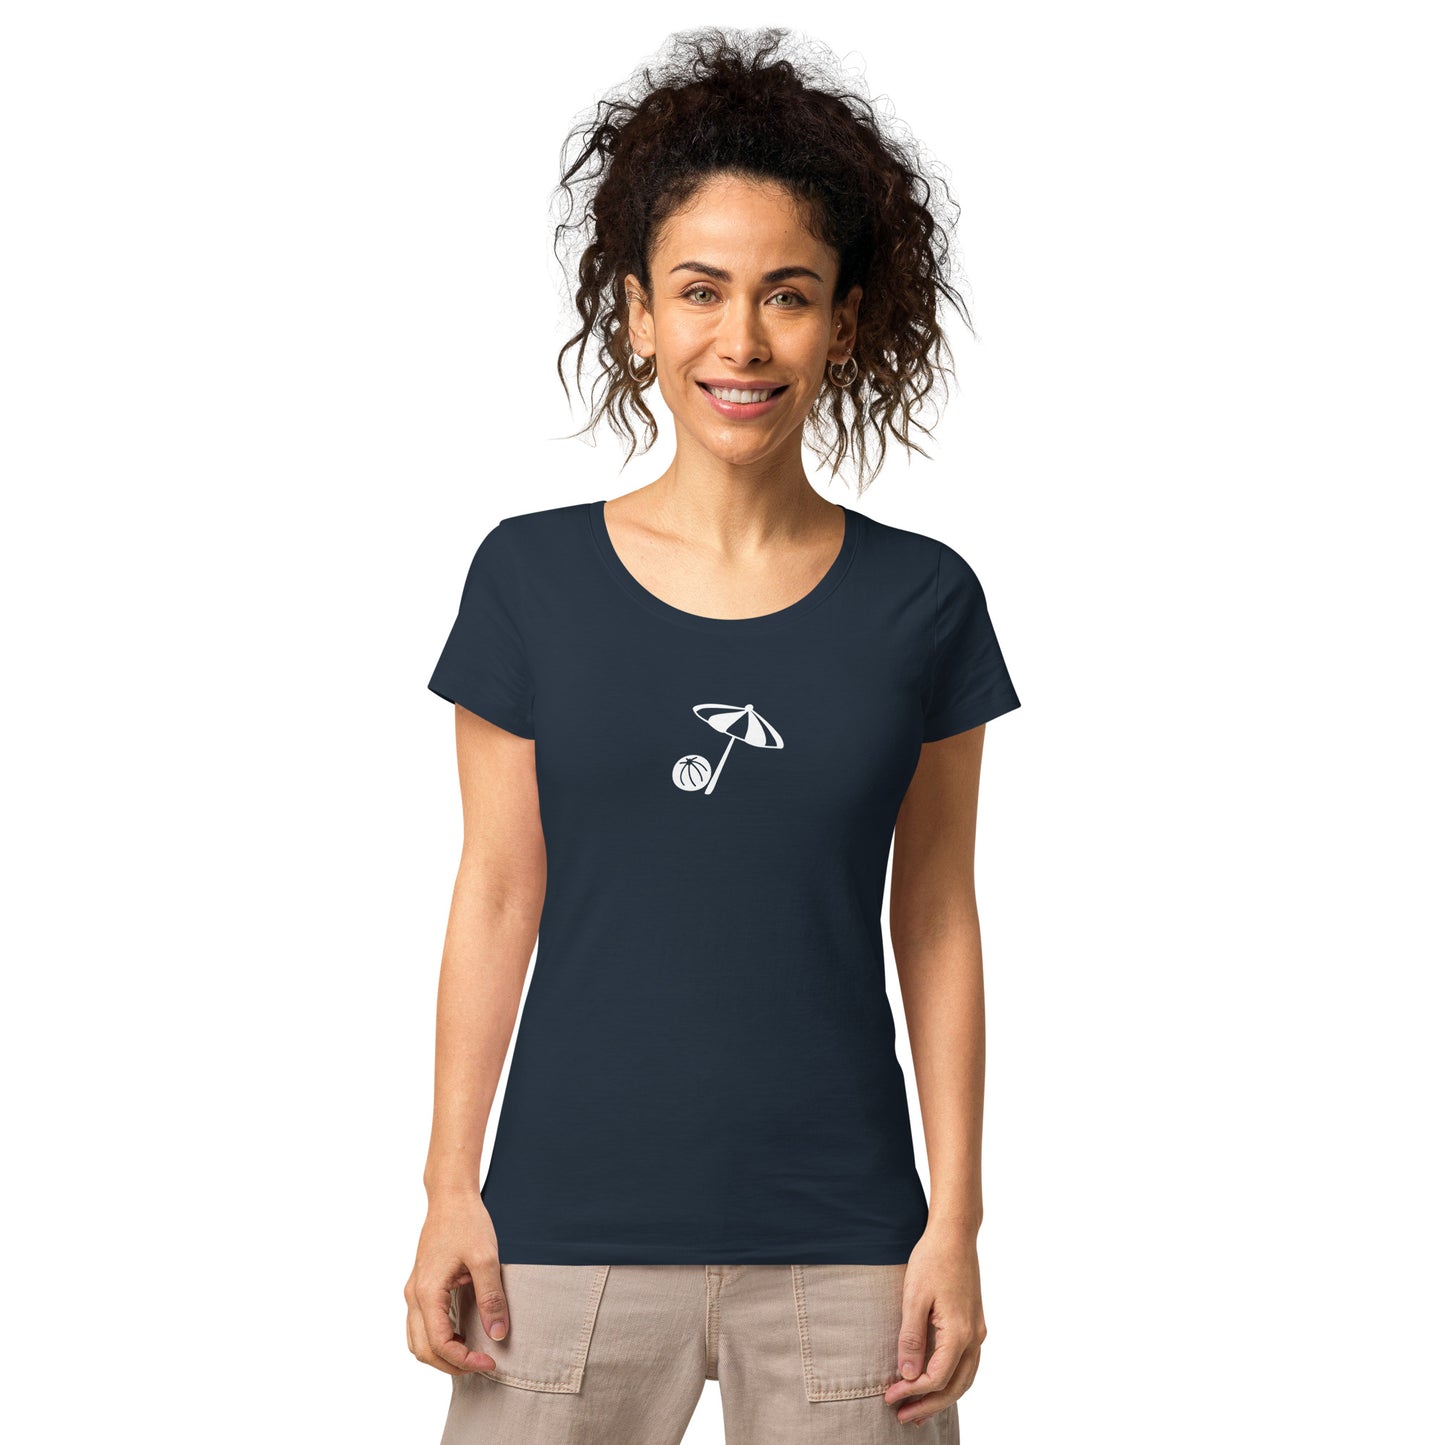 Florida Beach 954 Women’s basic t-shirt